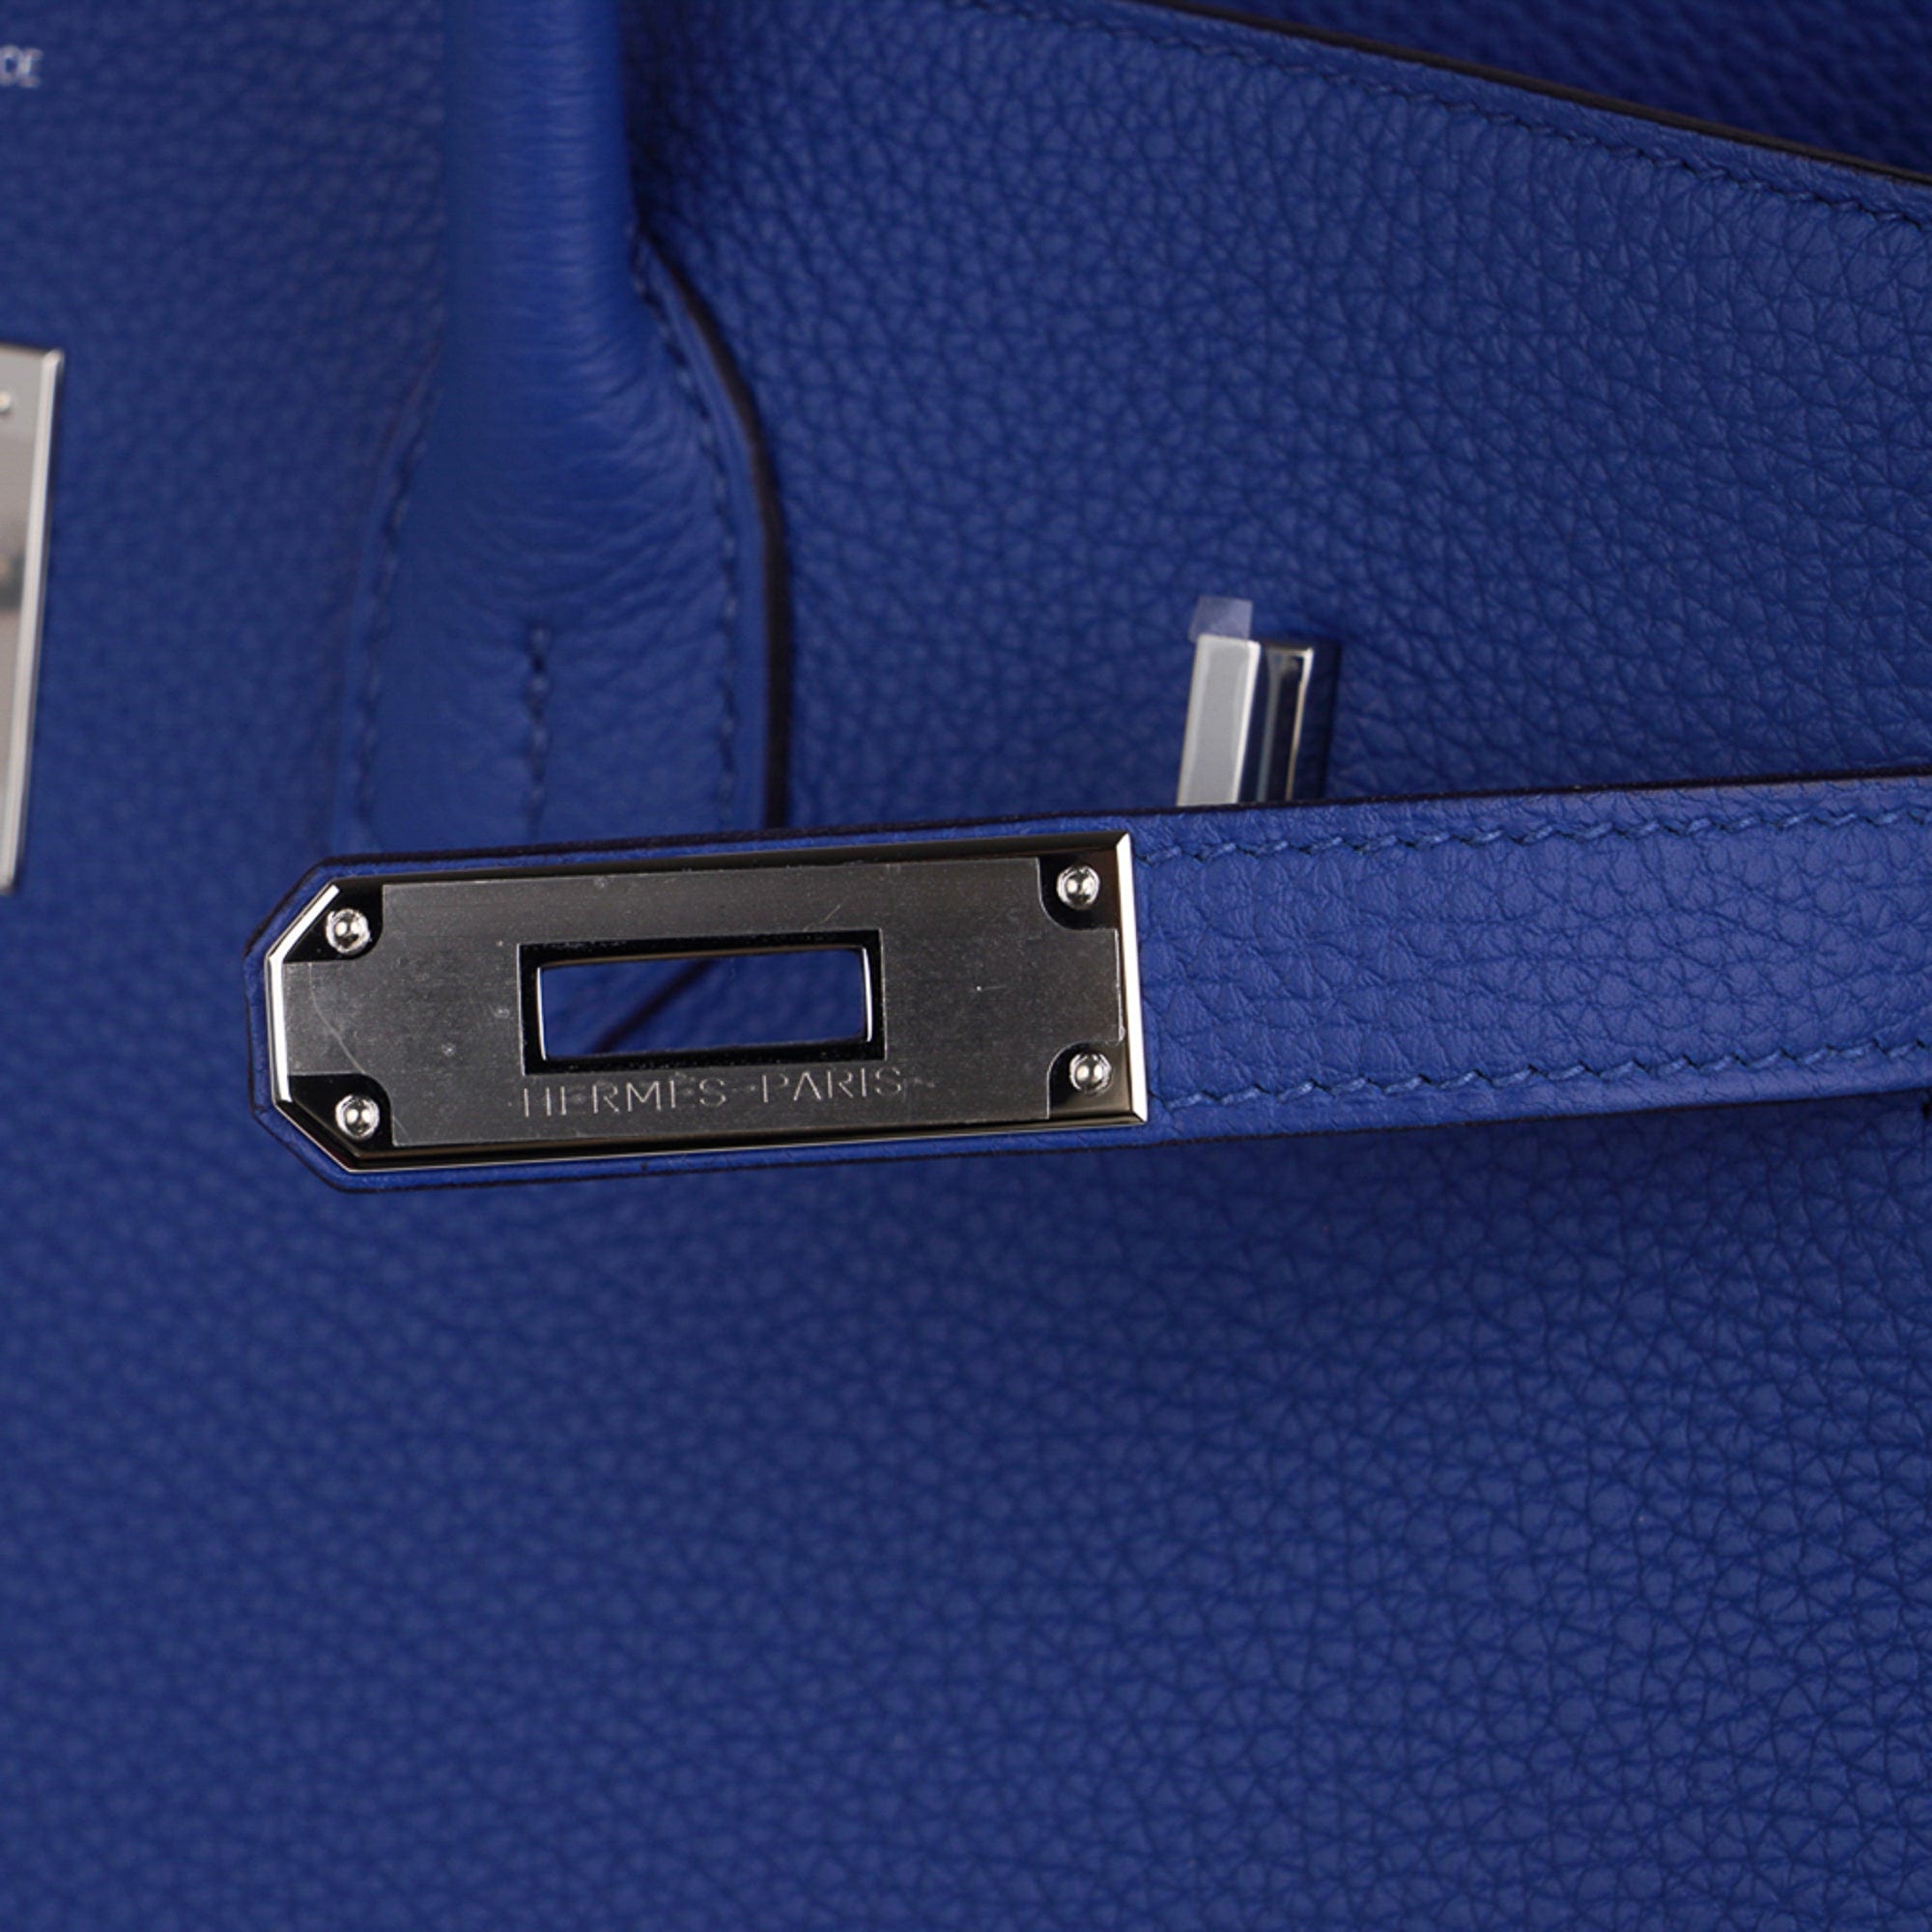 Hermes Birkin 35 Bag Blue de France Togo Leather Palladium